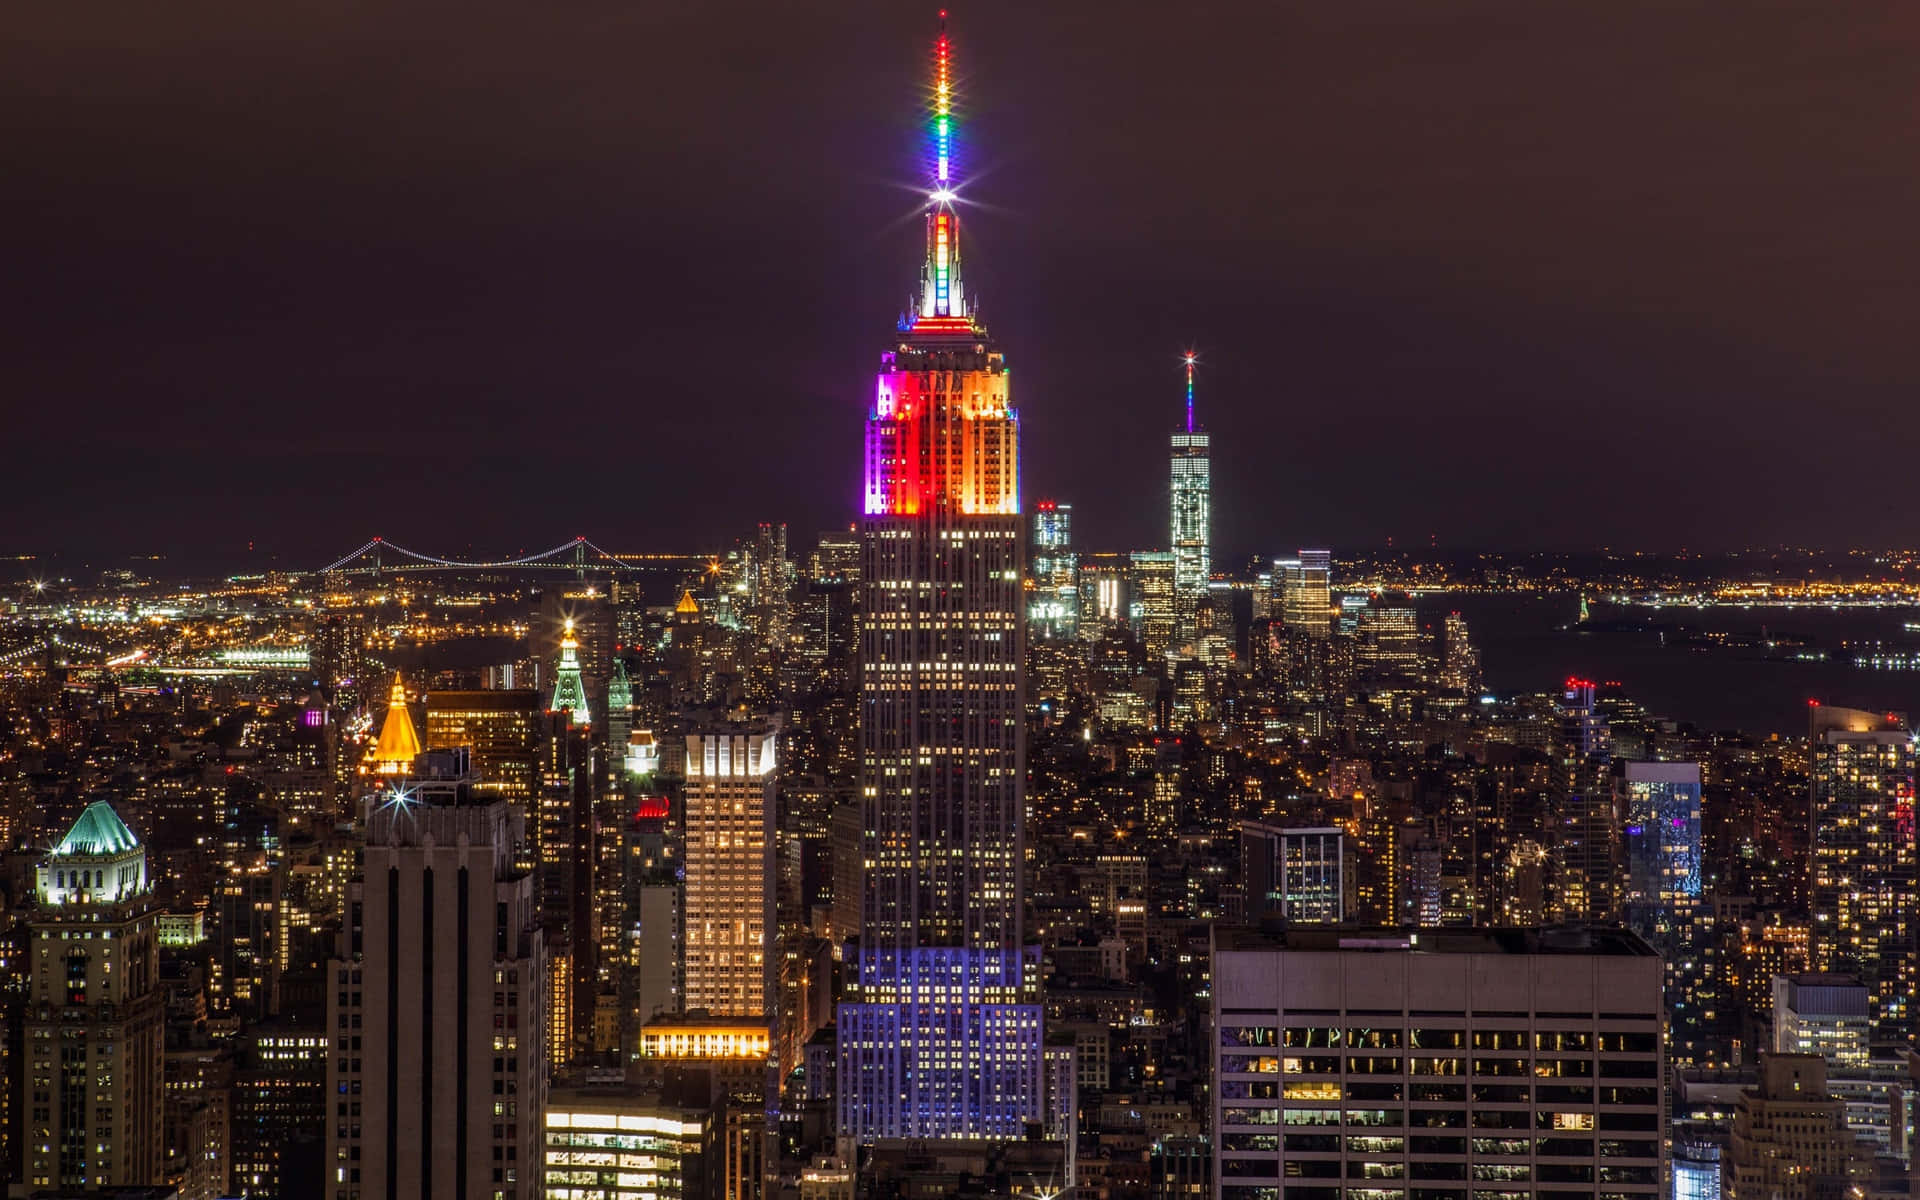 Fotoa Colori Dell'empire State Building Di New York Di Notte.